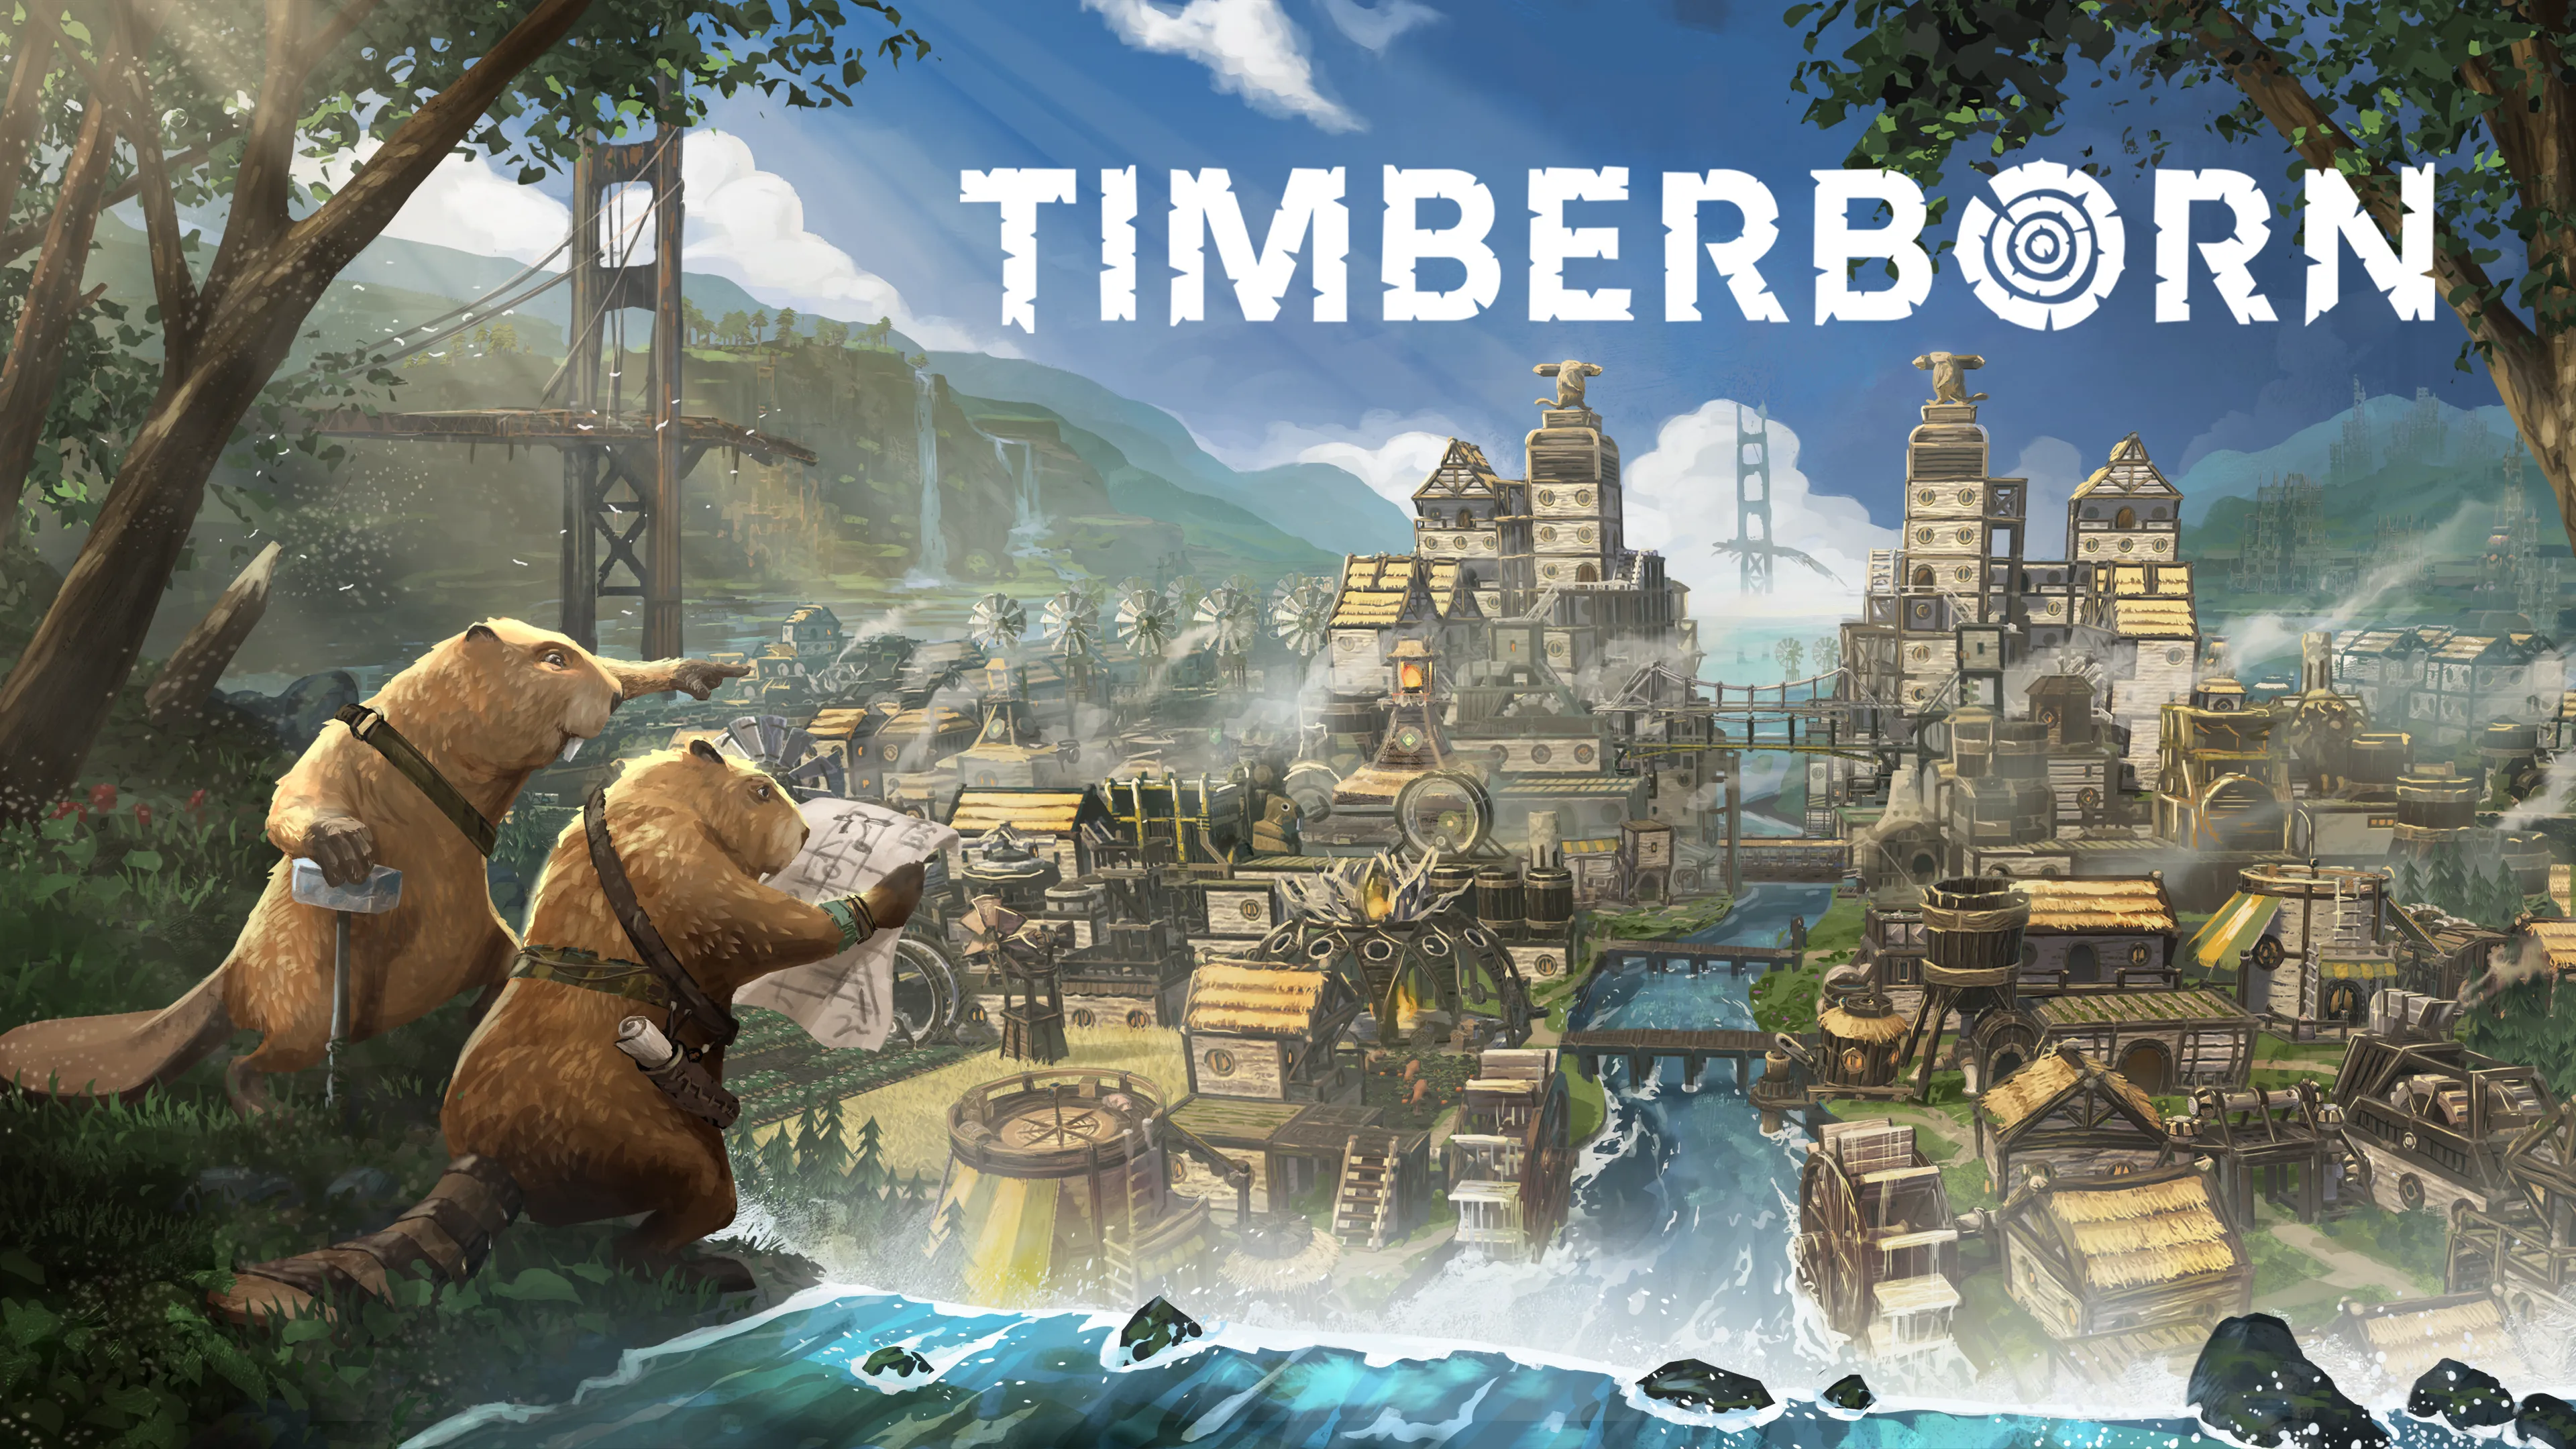 Timberborn - zagrałem w postapokaliptyczny city-builder z bobrami. Wrażenia z (udanej) rozgrywki